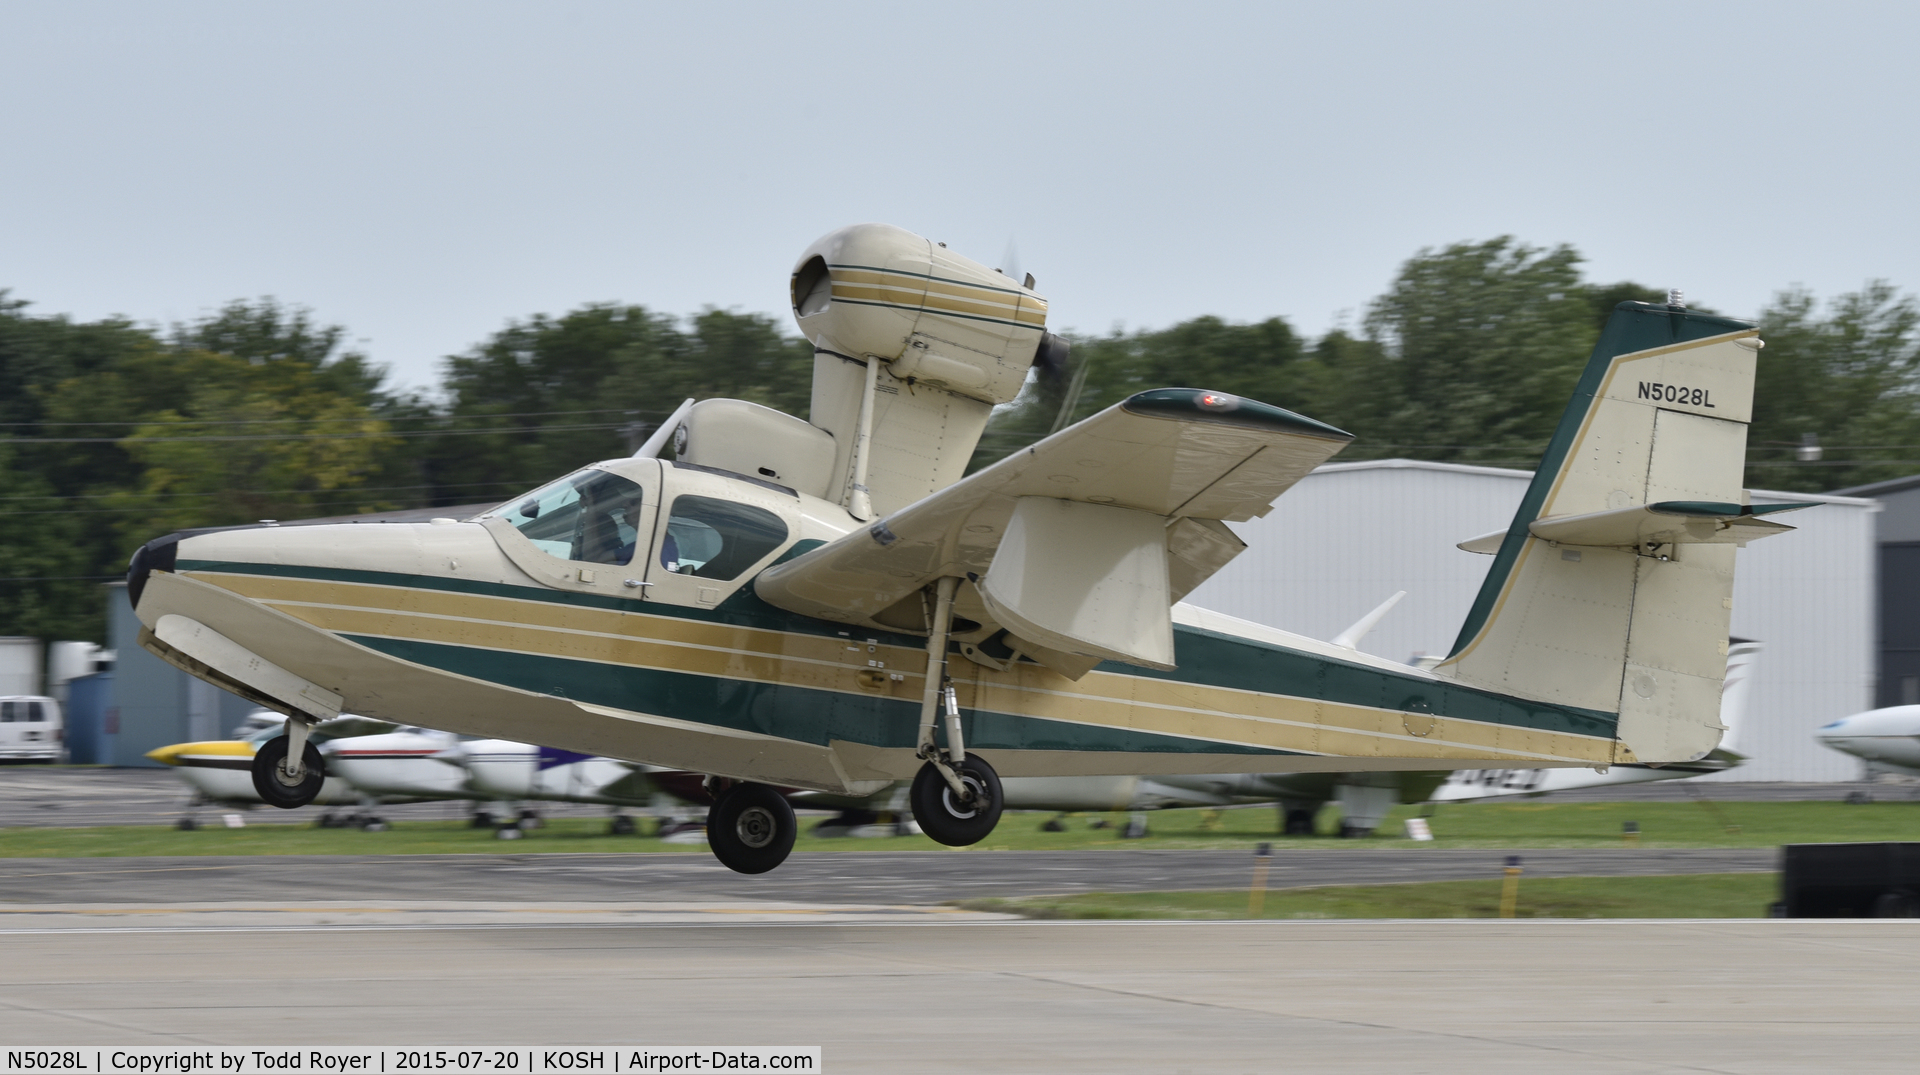 N5028L, 1971 Lake LA-4-200 Buccaneer C/N 485, Airventure 2015